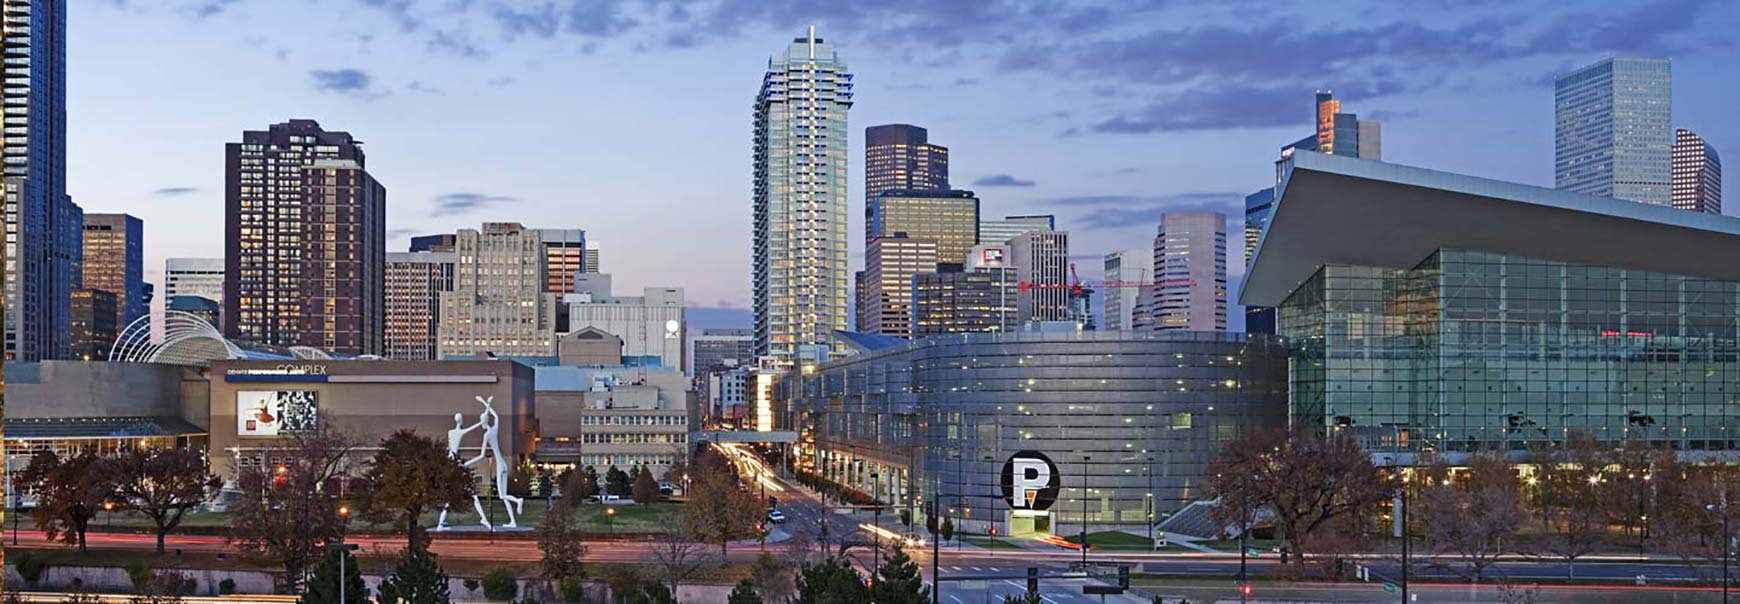 Denver City Skyline Convention Center With Spire